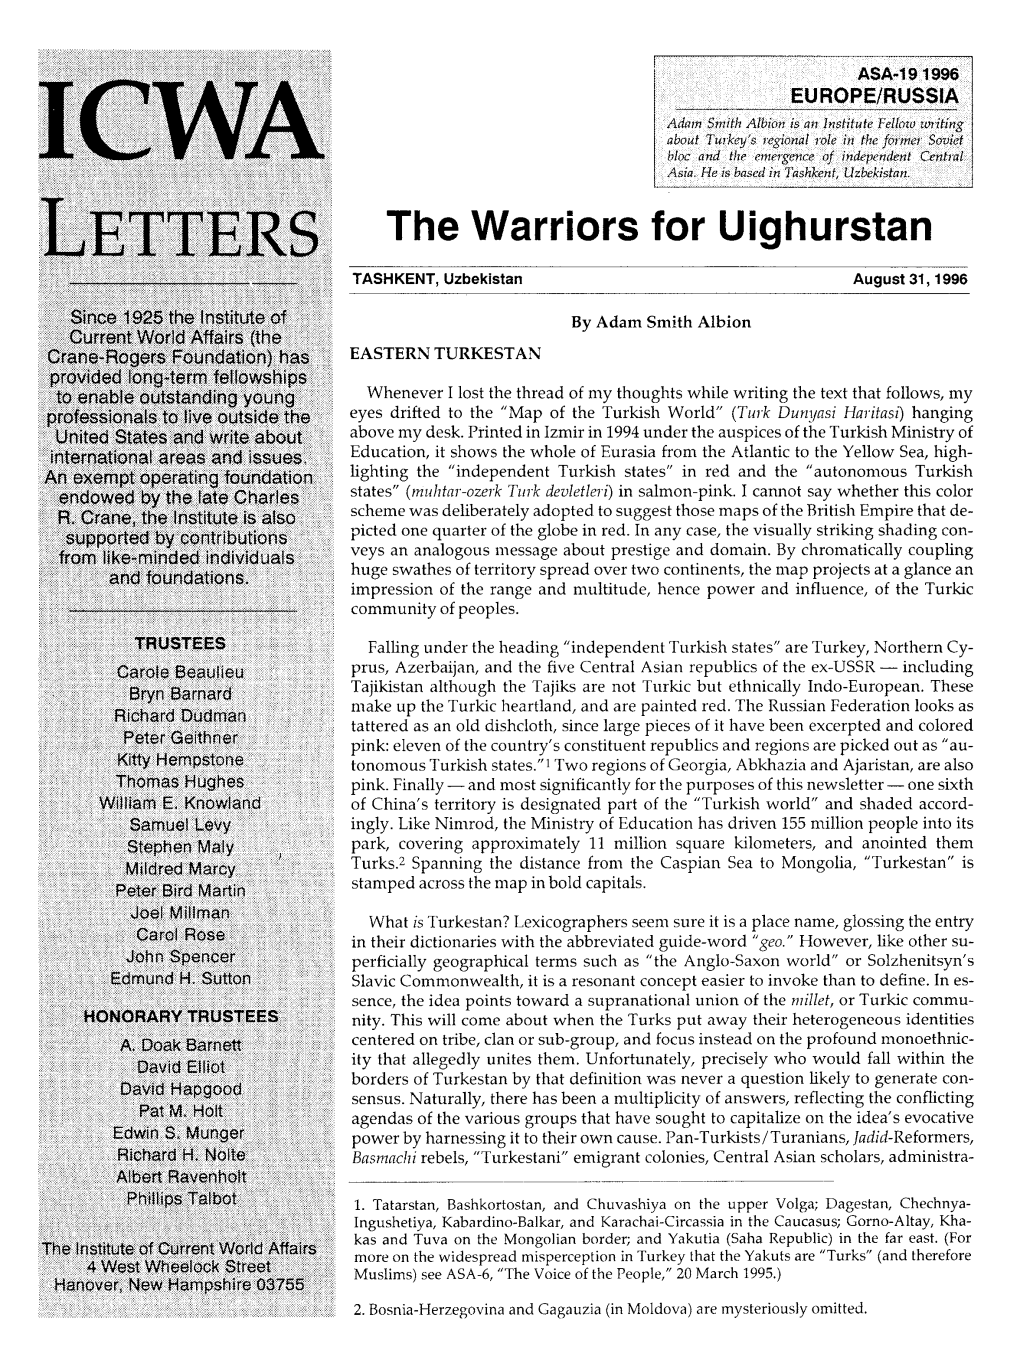 The Warriors for Uighurstan